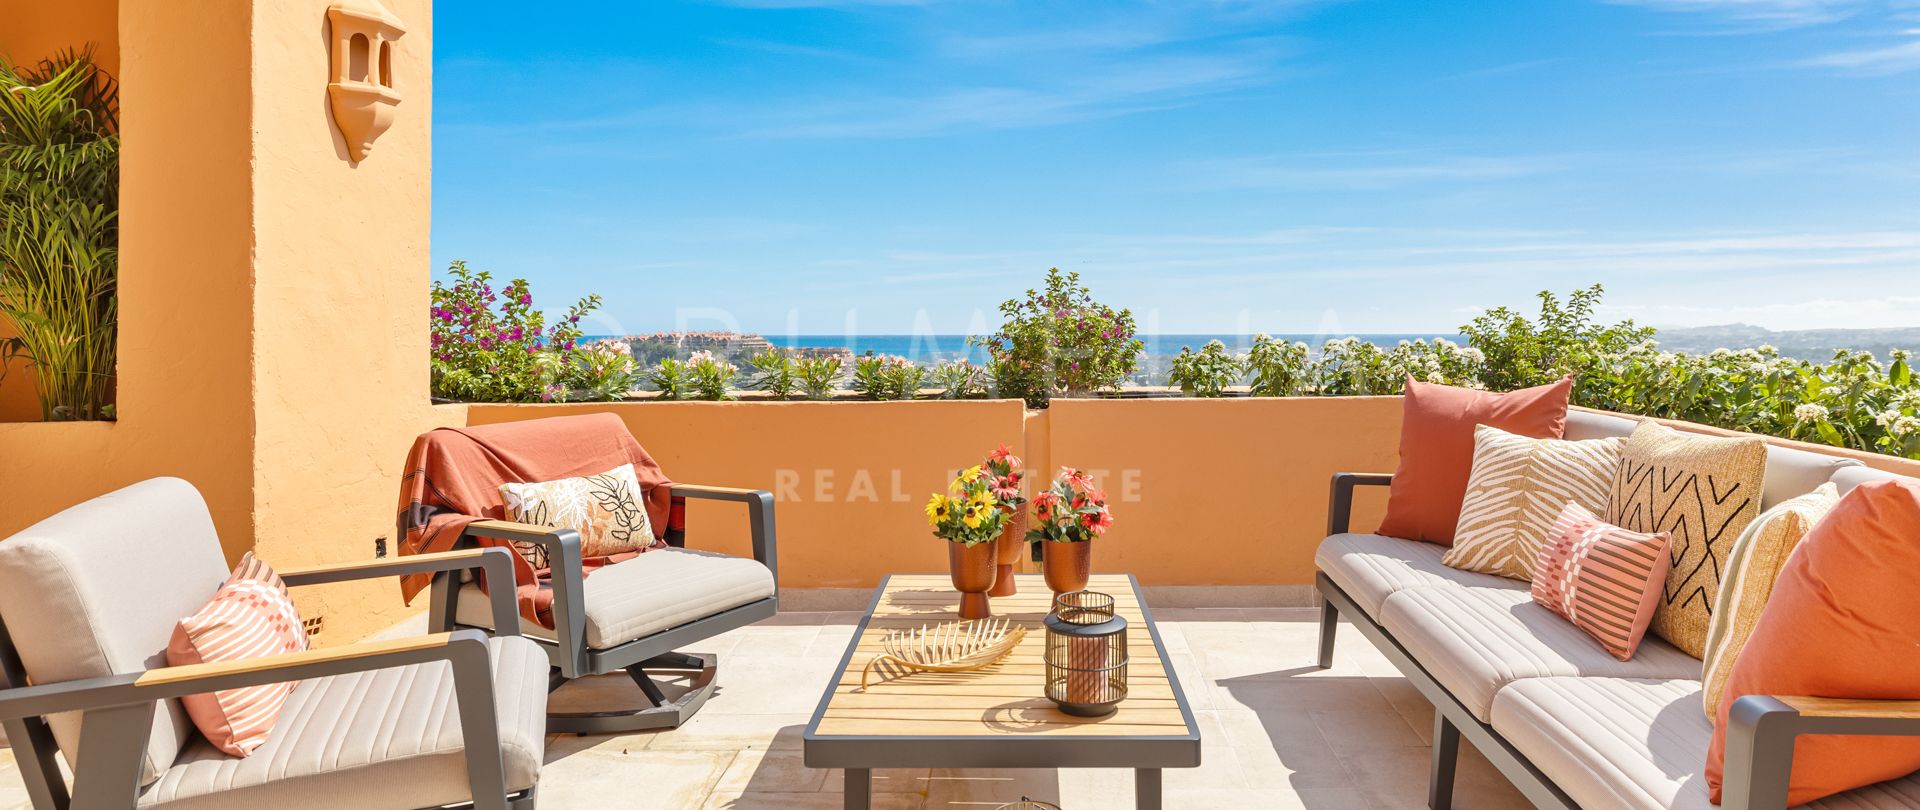 Superb renoviertes Penthouse mit Meerblick in Los Belvederes, Nueva Andalucia, Marbella